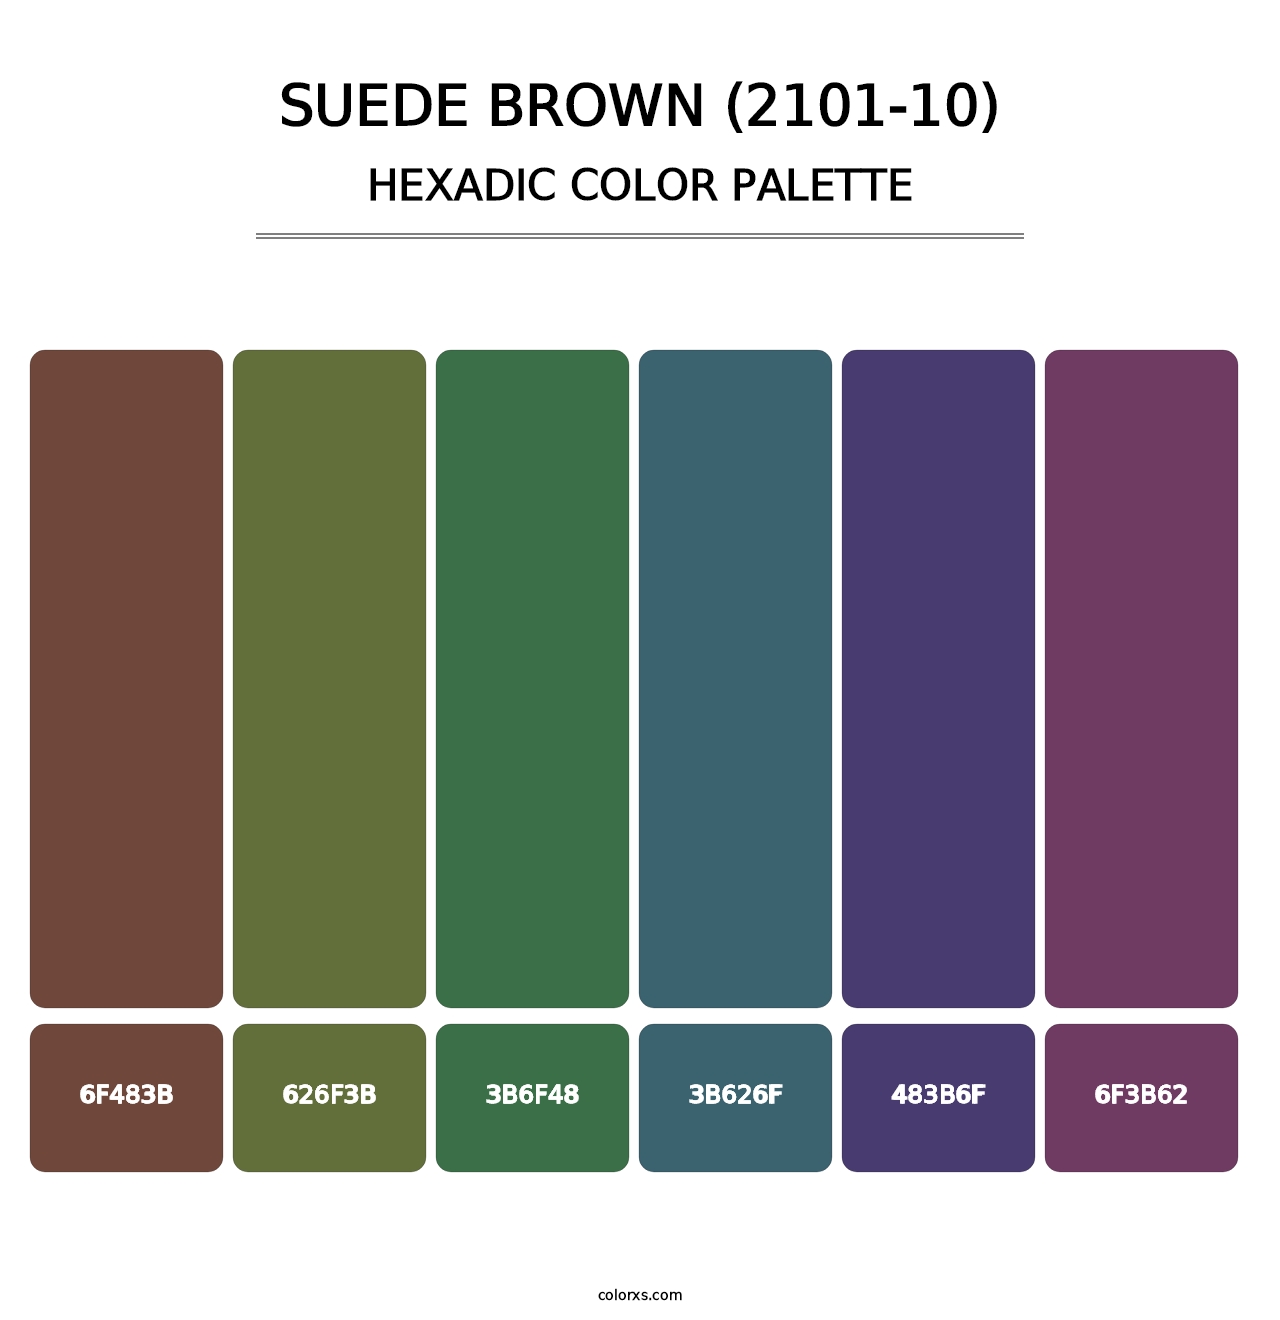 Suede Brown (2101-10) - Hexadic Color Palette